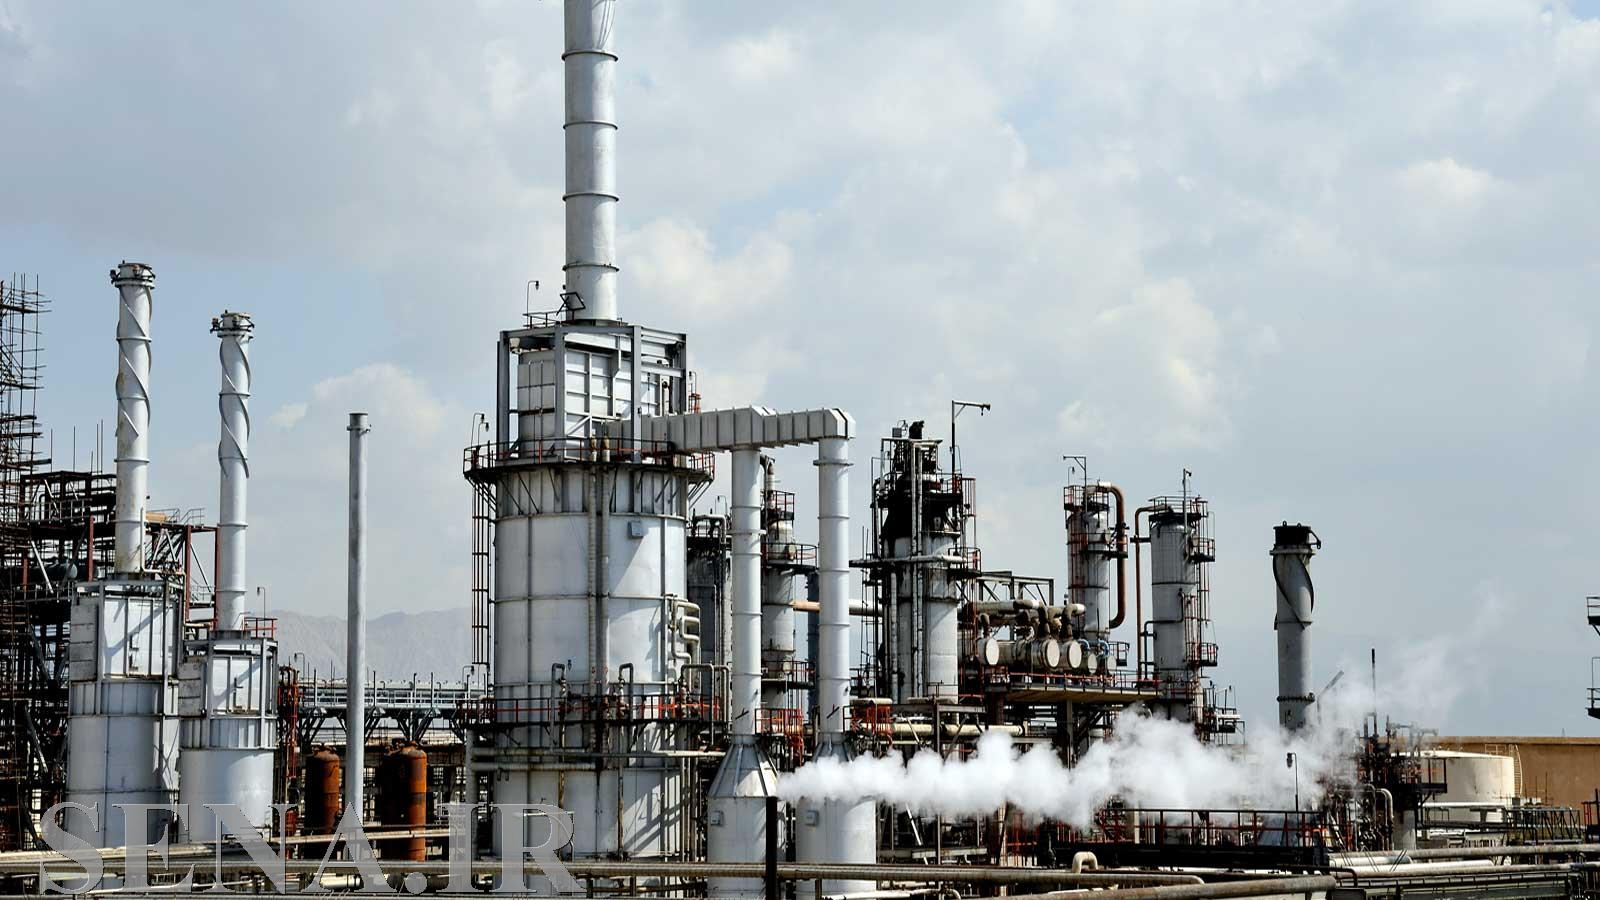 واگذاری پالایشگاه نفت کرمانشاه در کمال صحت و سلامت صورت گرفته است